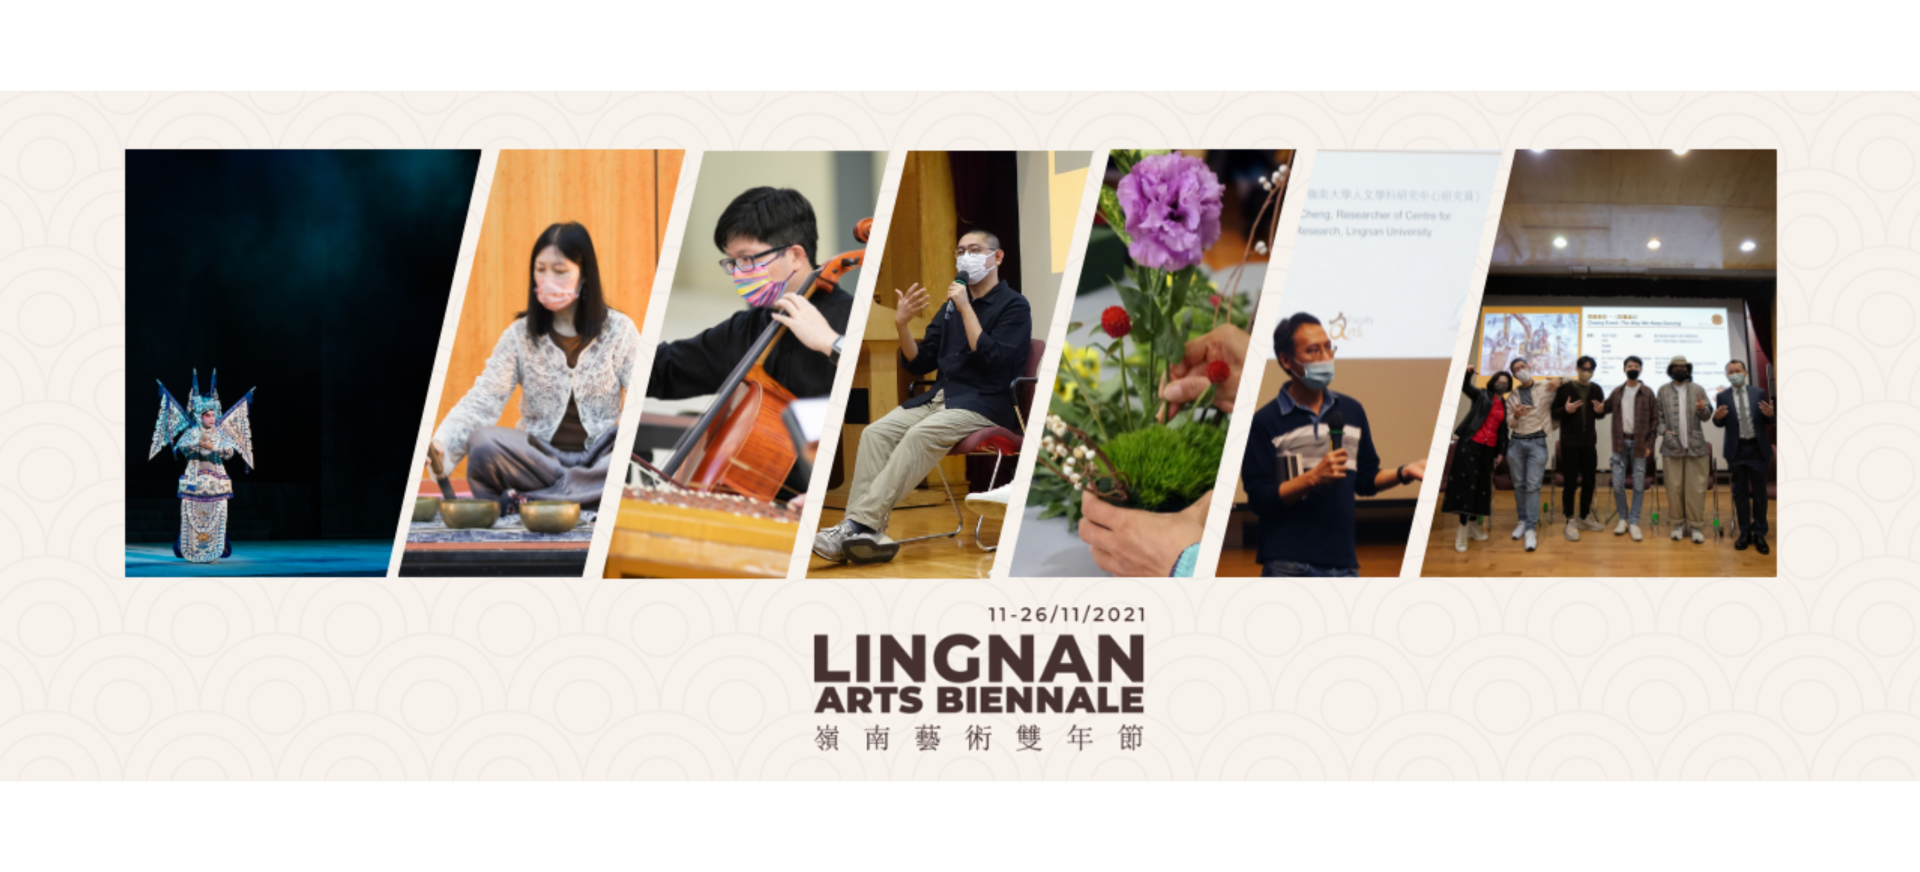 Lingnan Arts Festival 2021